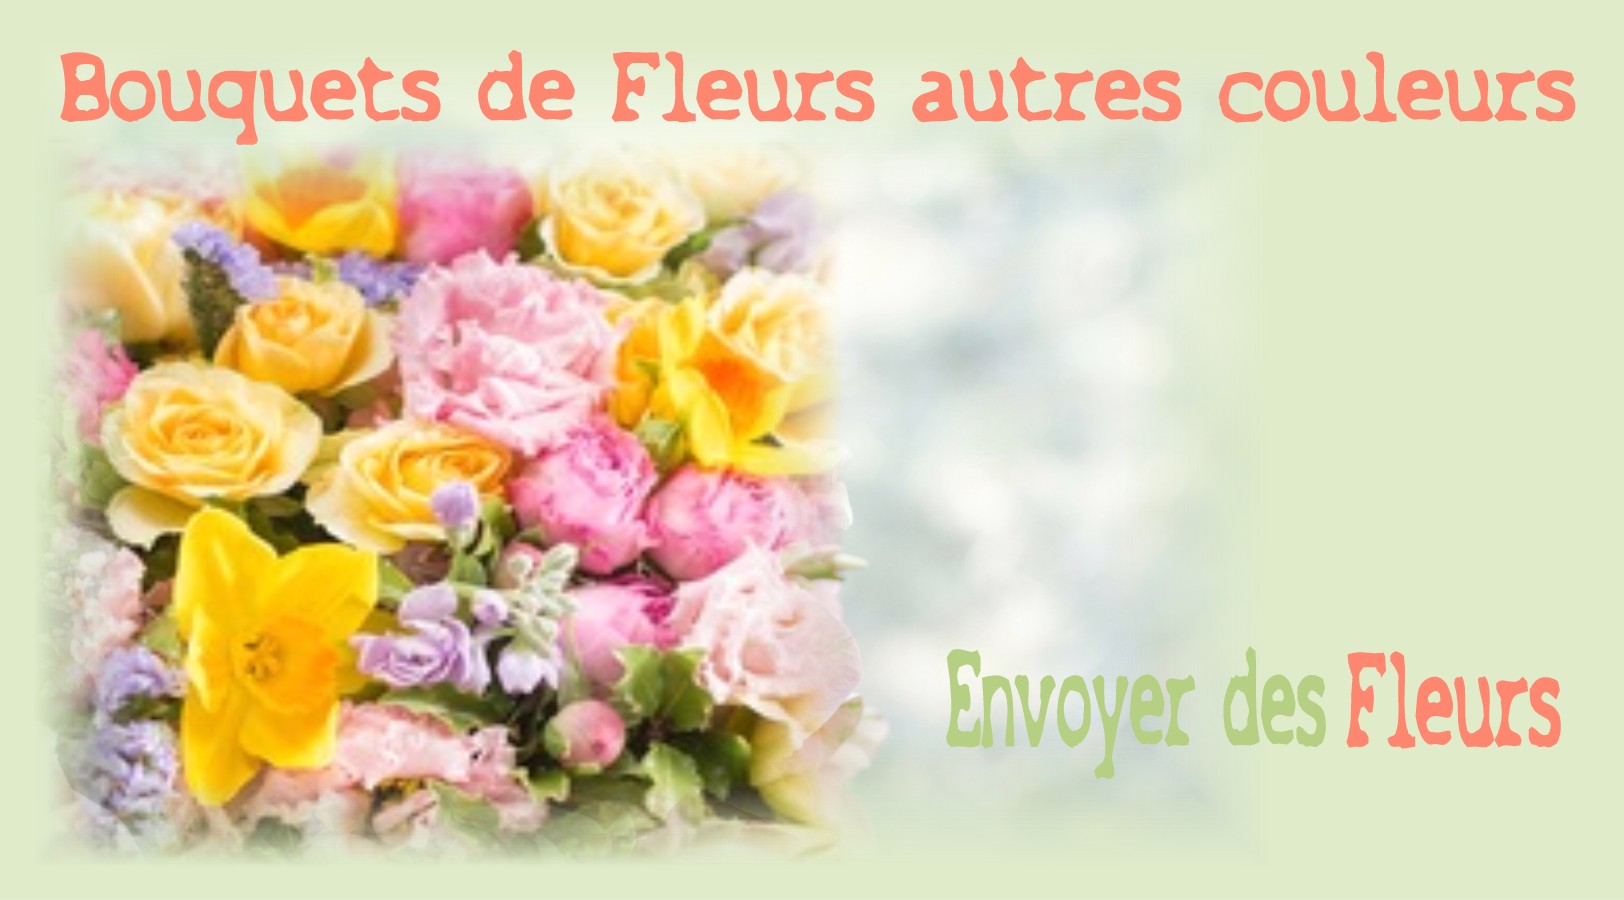 BOUQUETS DE FLEURS AUTRES COULEURS - FLEURISTE MONTPELLIER (34) - ENVOYER DES FLEURS